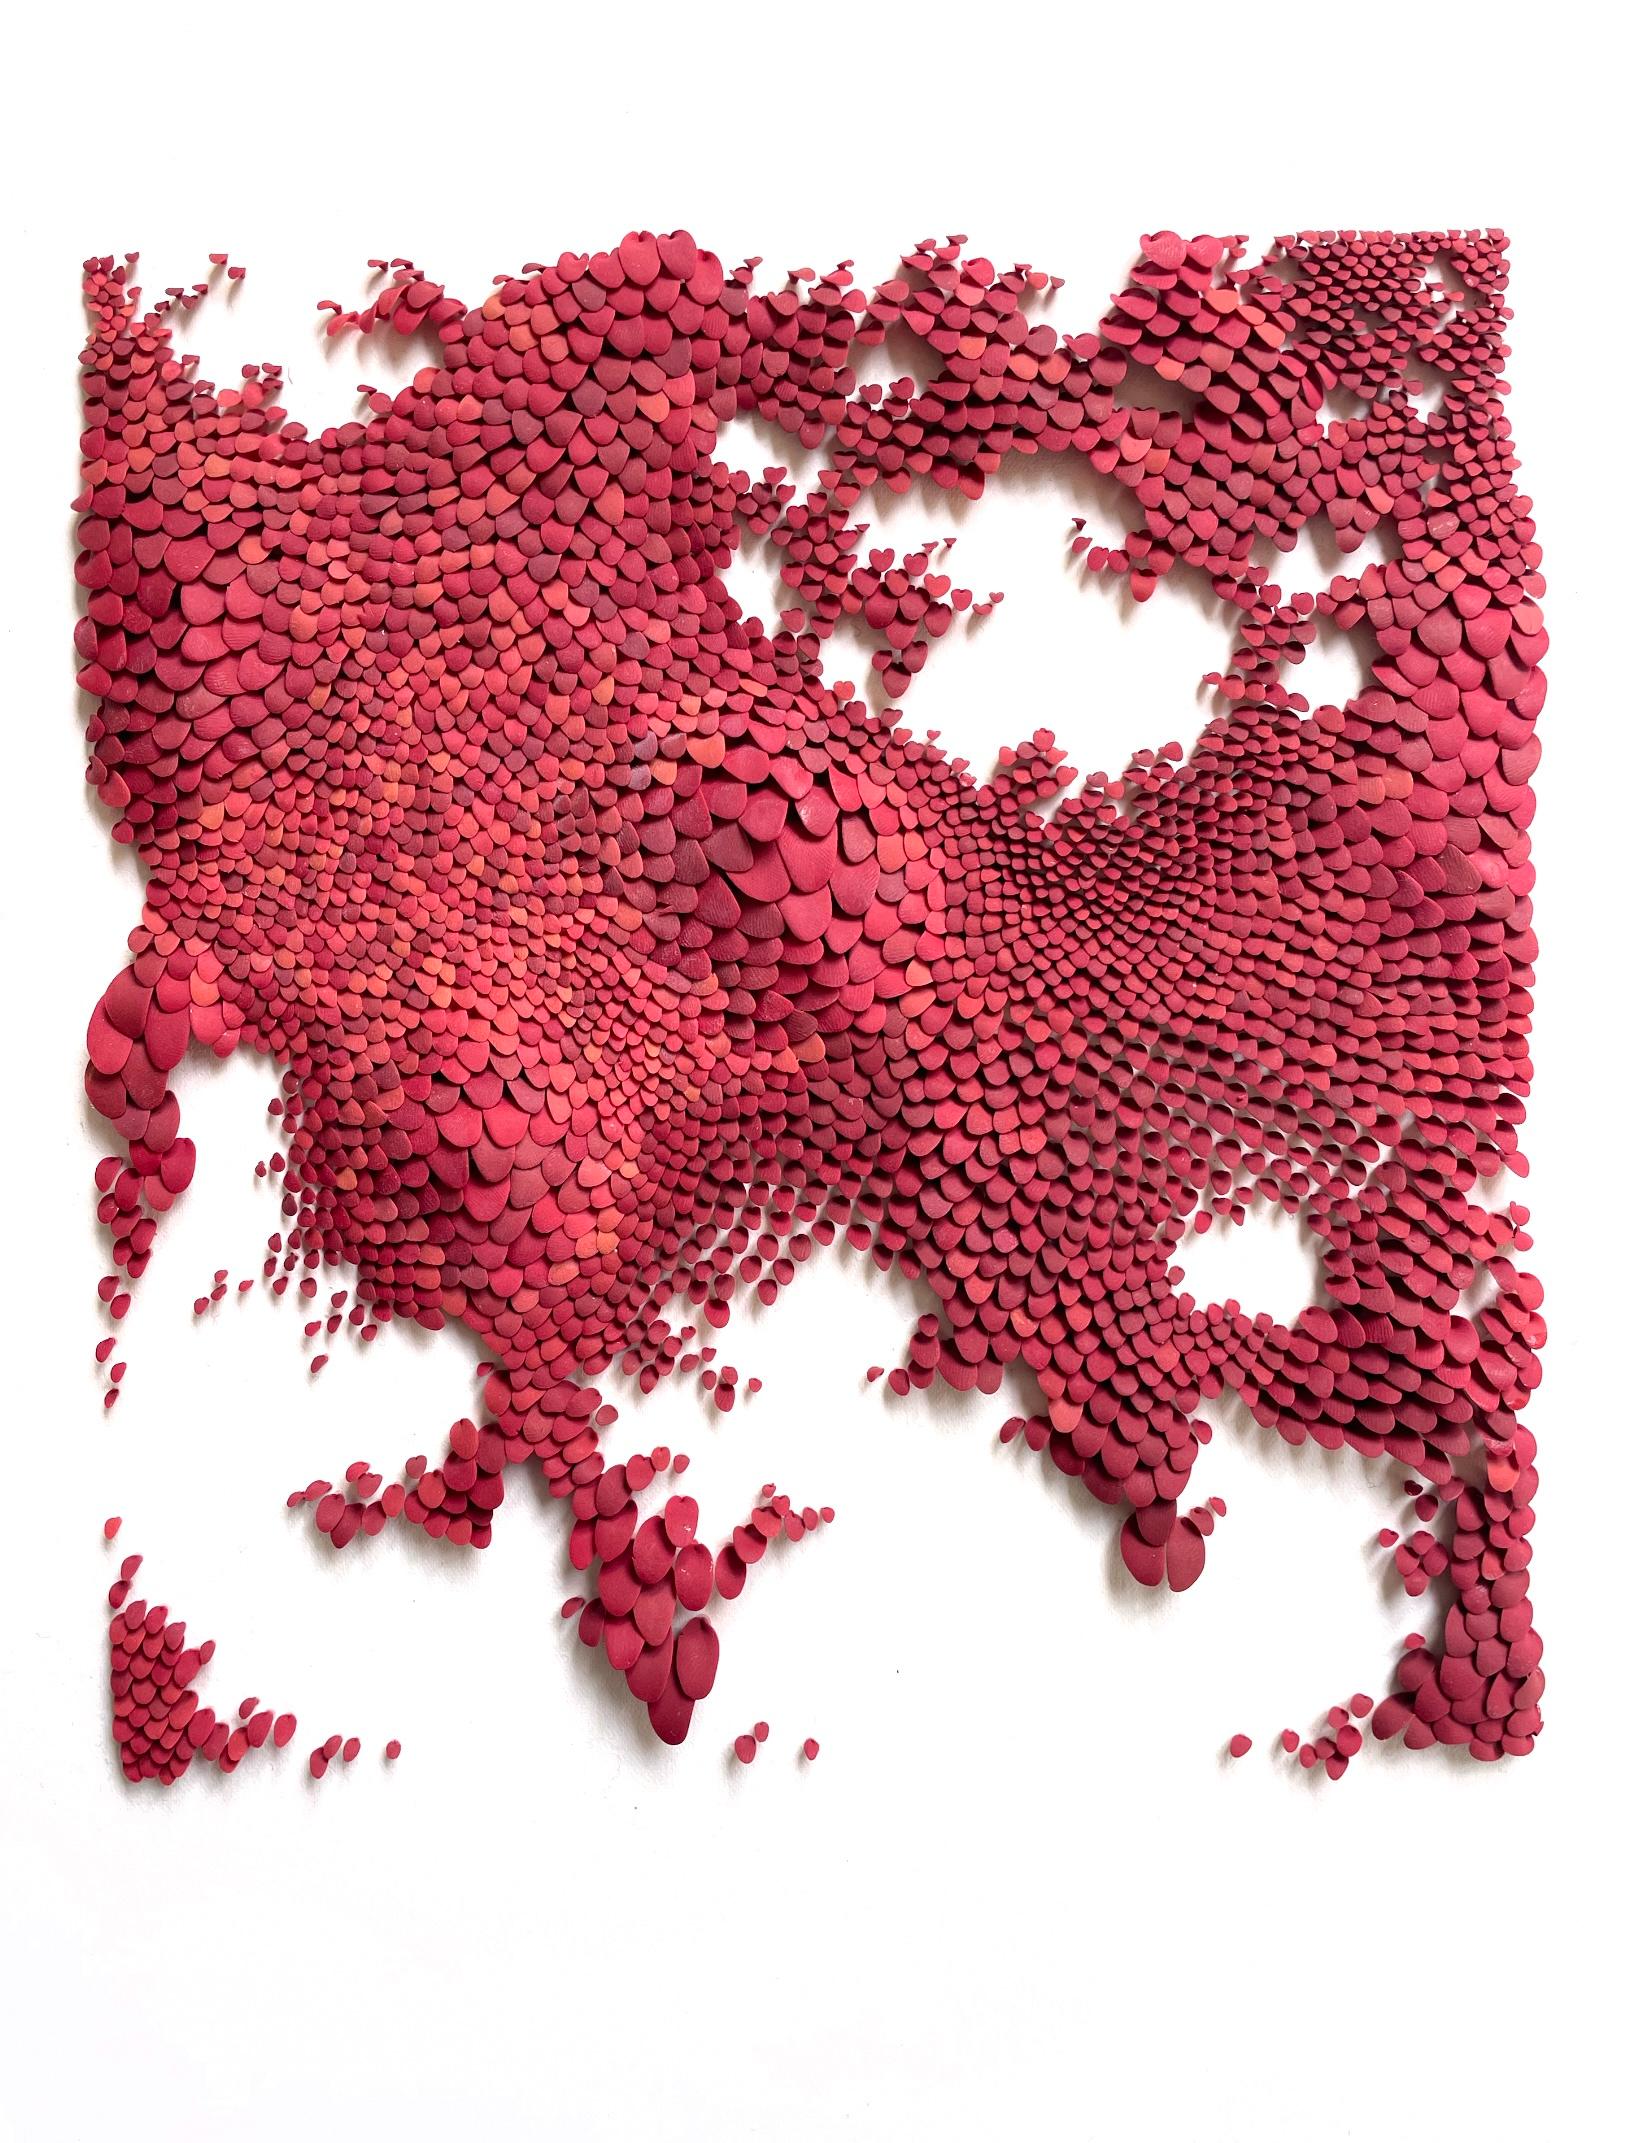 Herbstrot - abstrakte, von der Nature inspirierte, minimale Collage aus Polymer-Ton auf Papier